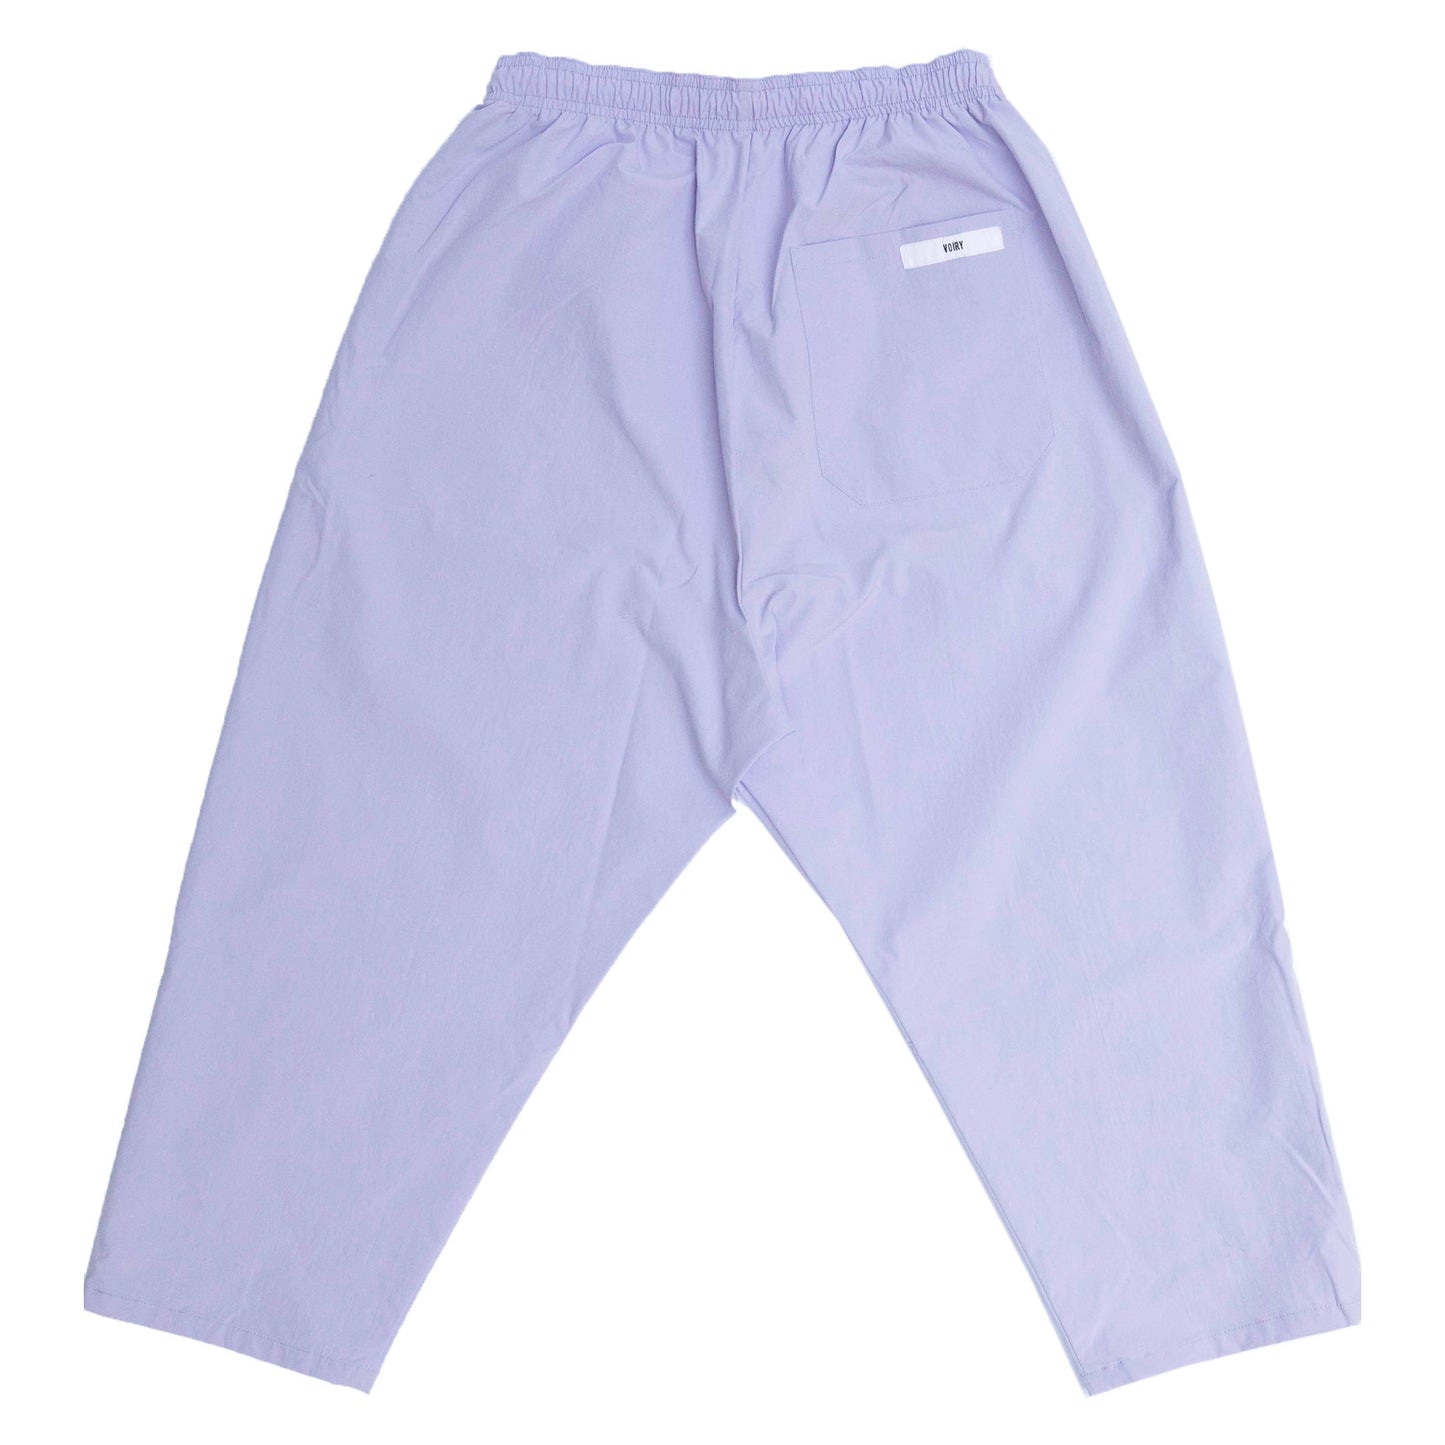 Sunday Pants (VOIRY) | $90.00